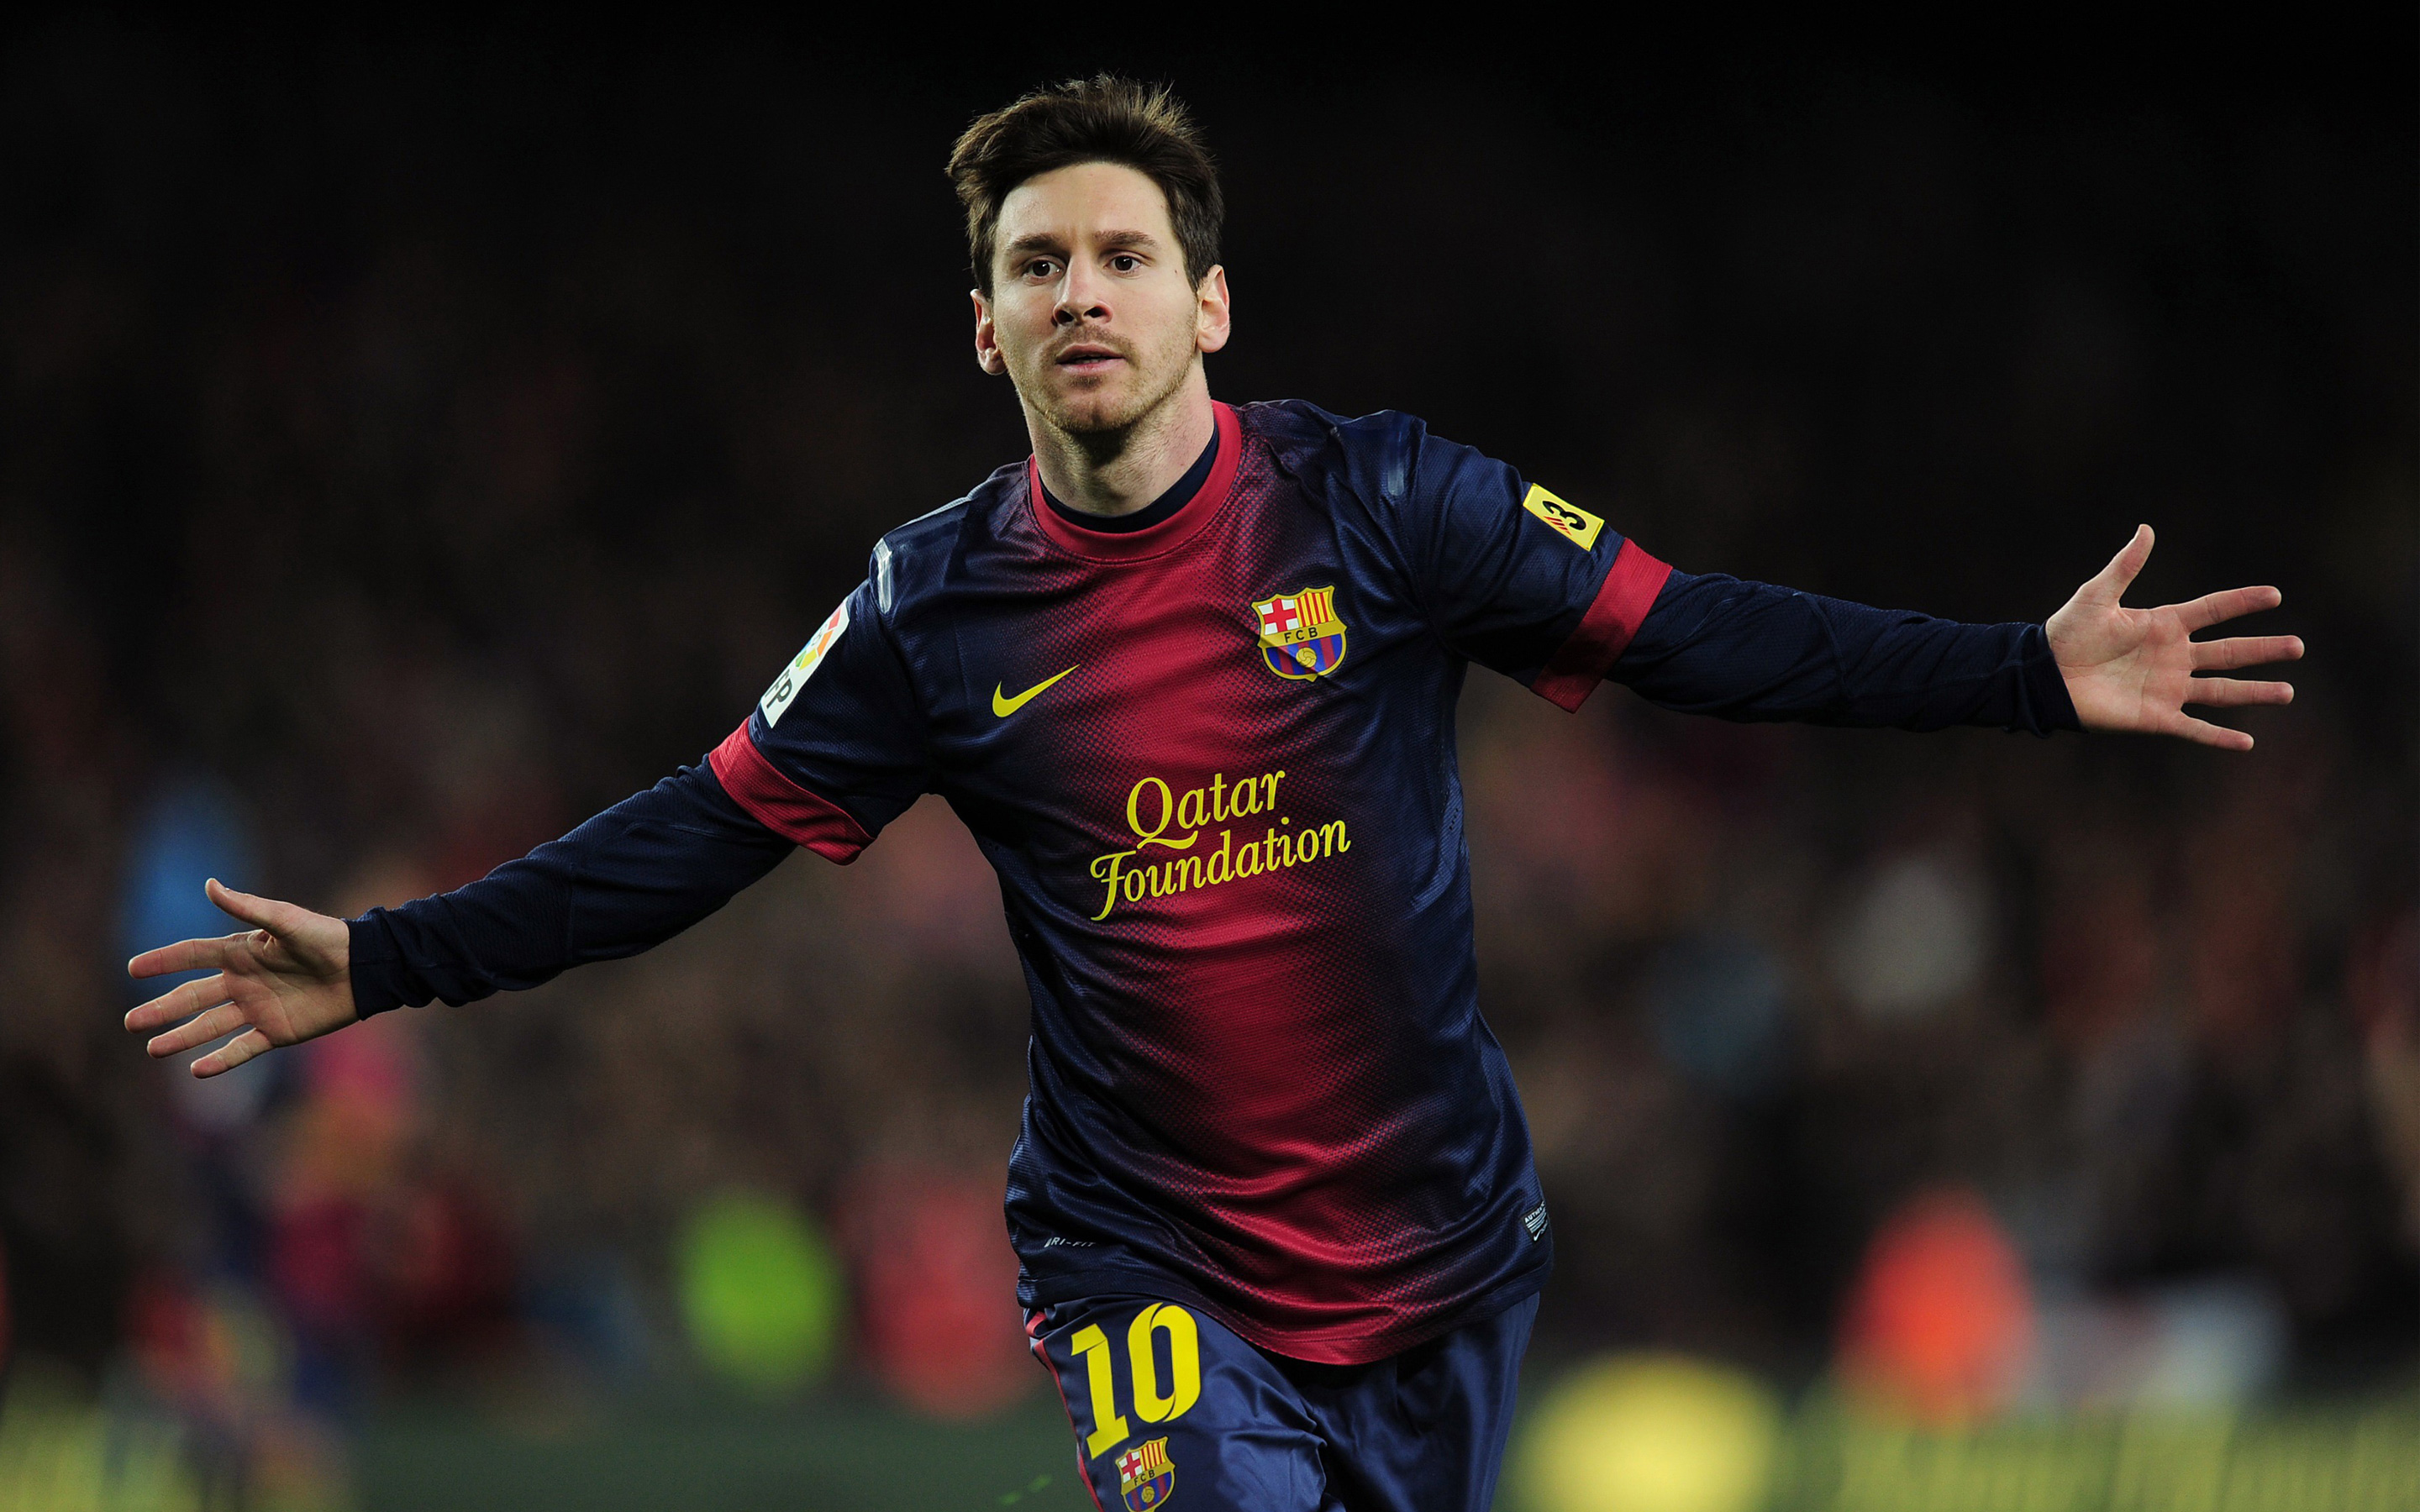 Choáng ngợp với hình nền Messi 4k hoàn hảo để trang trí cho desktop của bạn. Với khả năng tự tin, tài năng và rồi sự quyết tâm, Messi đã không ngừng chinh phục những tầm cao mới trong sự nghiệp bóng đá của mình. Hãy cùng trải nghiệm hình ảnh độc đáo và sắc nét của siêu sao này.